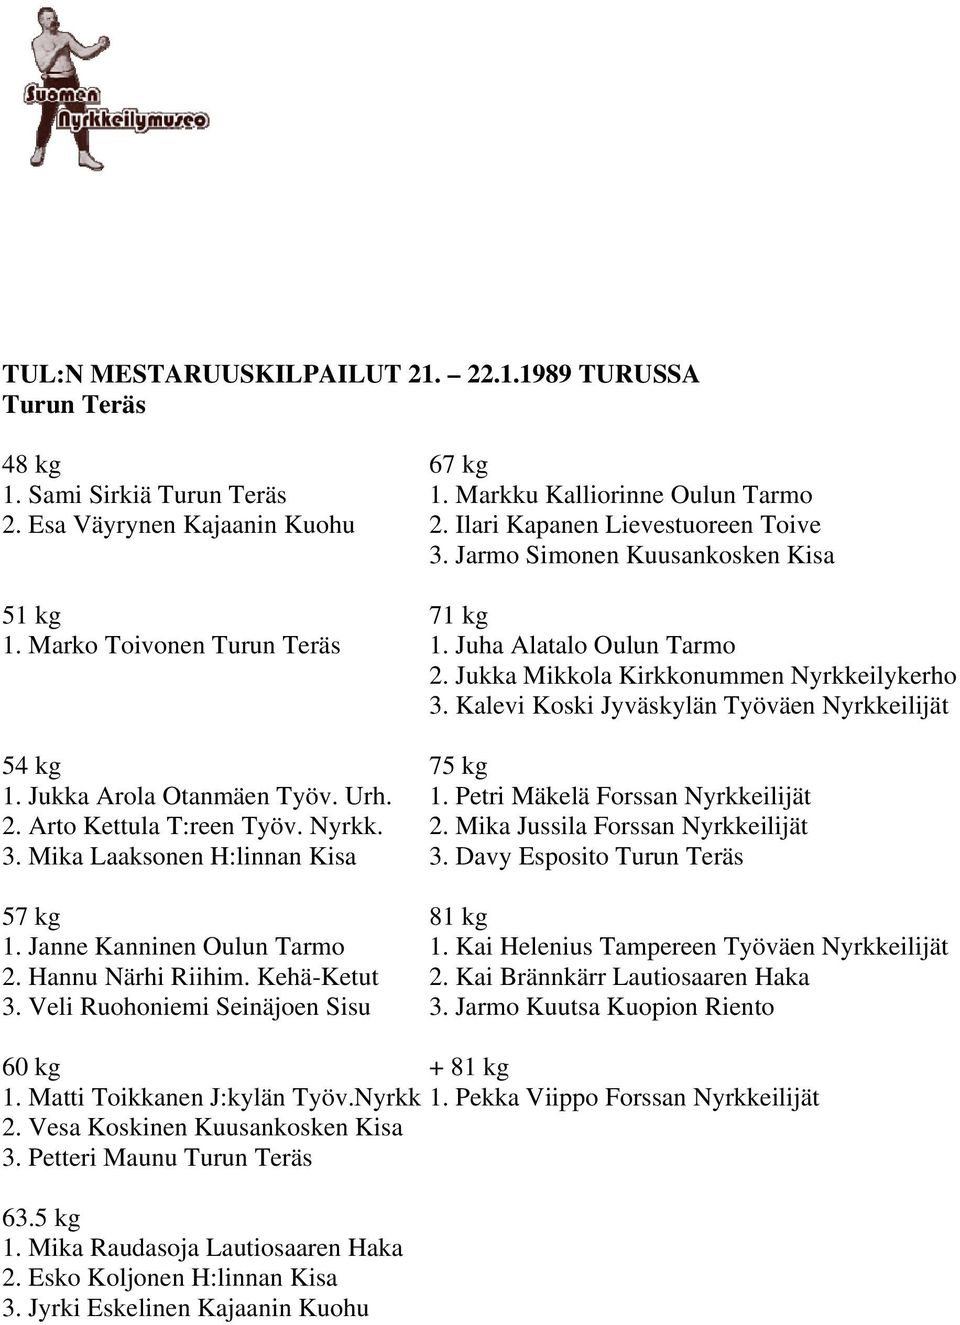 Jukka Arola Otanmäen Työv. Urh. 1. Petri Mäkelä Forssan Nyrkkeilijät 2. Arto Kettula T:reen Työv. Nyrkk. 2. Mika Jussila Forssan Nyrkkeilijät 3. Mika Laaksonen H:linnan Kisa 3.